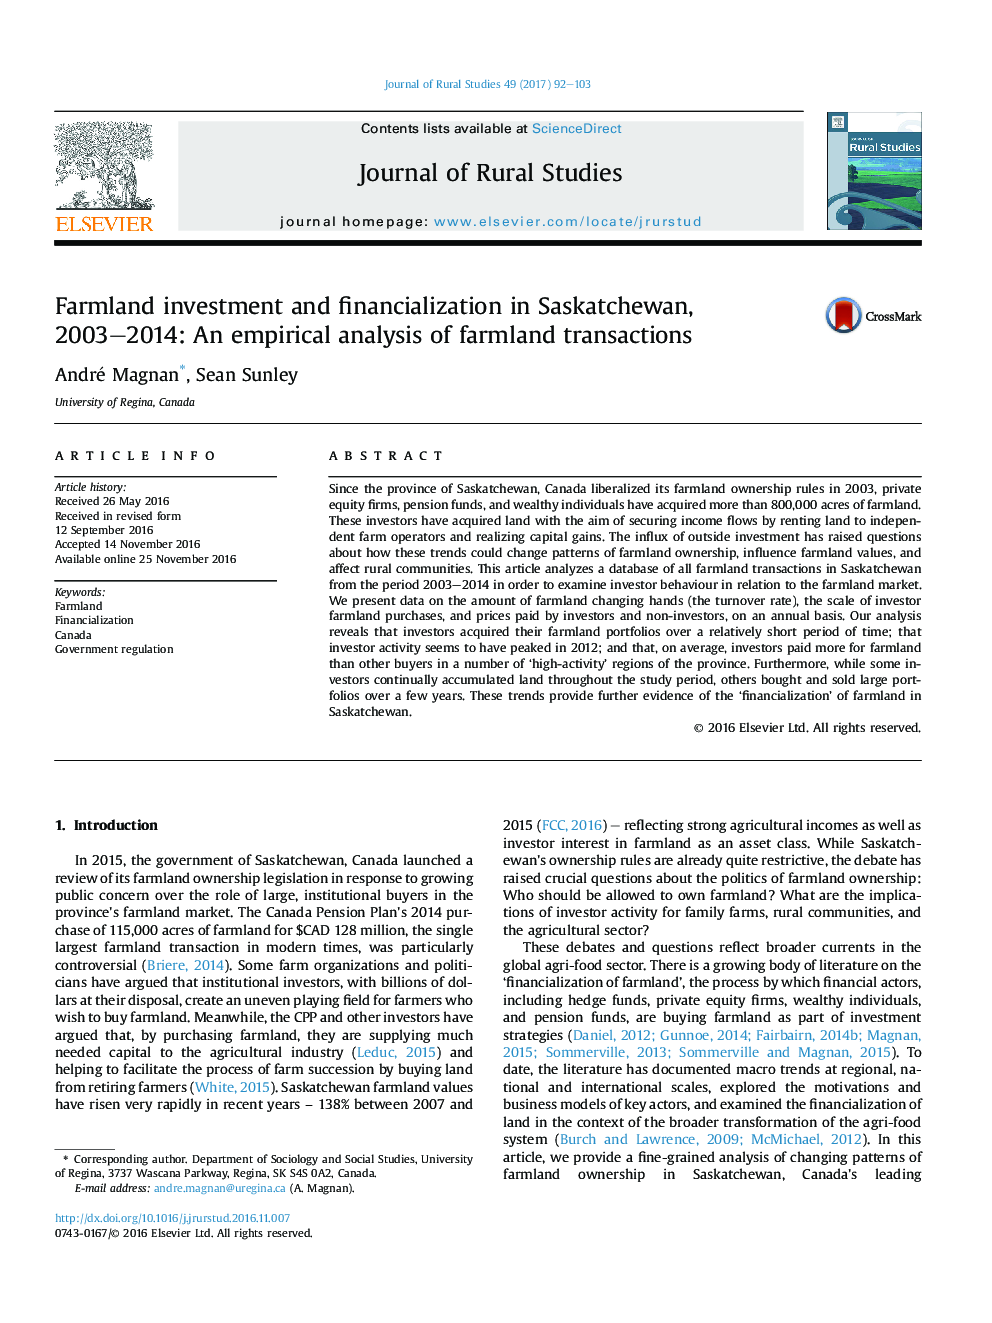 سرمایه گذاری و مالی سازی زمین های کشاورزی در ساسکاچوان، 2003 و 2014: تحلیل تجربی از معاملات زمین های کشاورزی